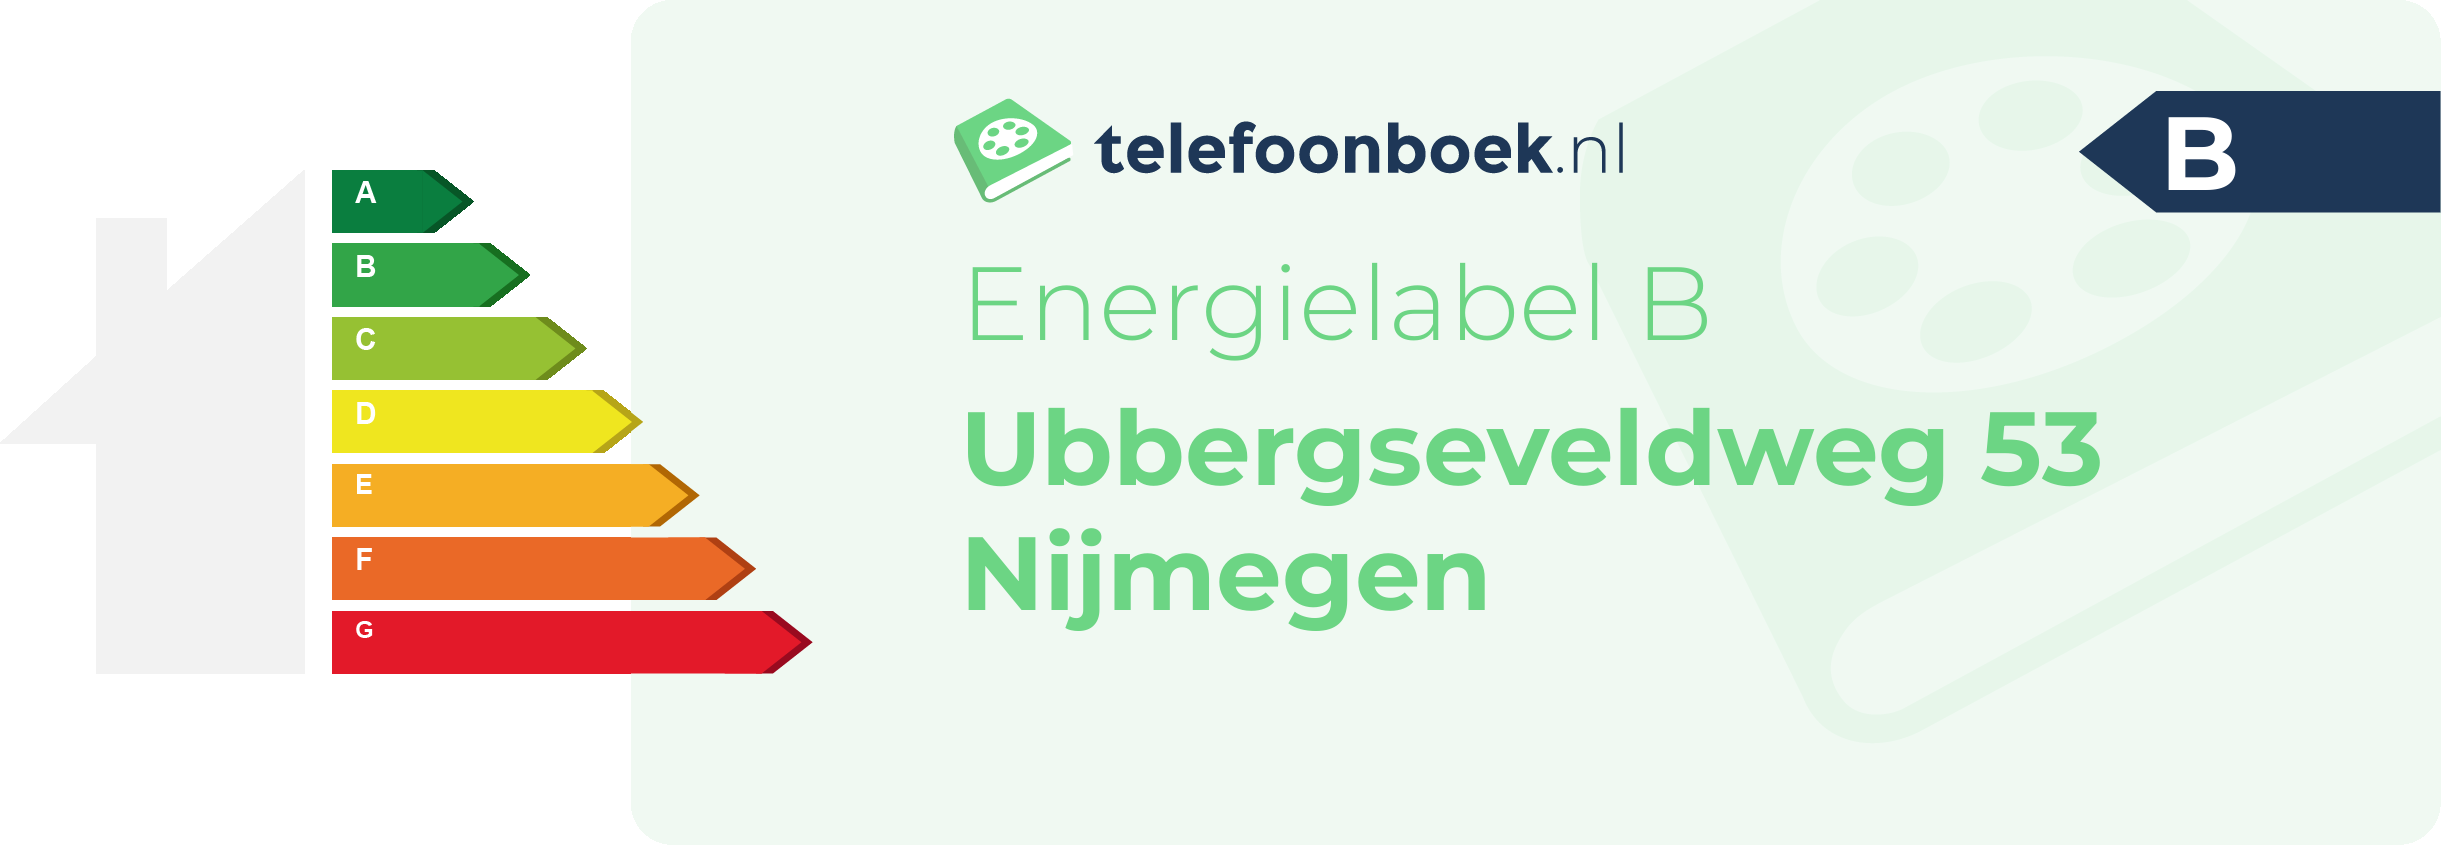 Energielabel Ubbergseveldweg 53 Nijmegen